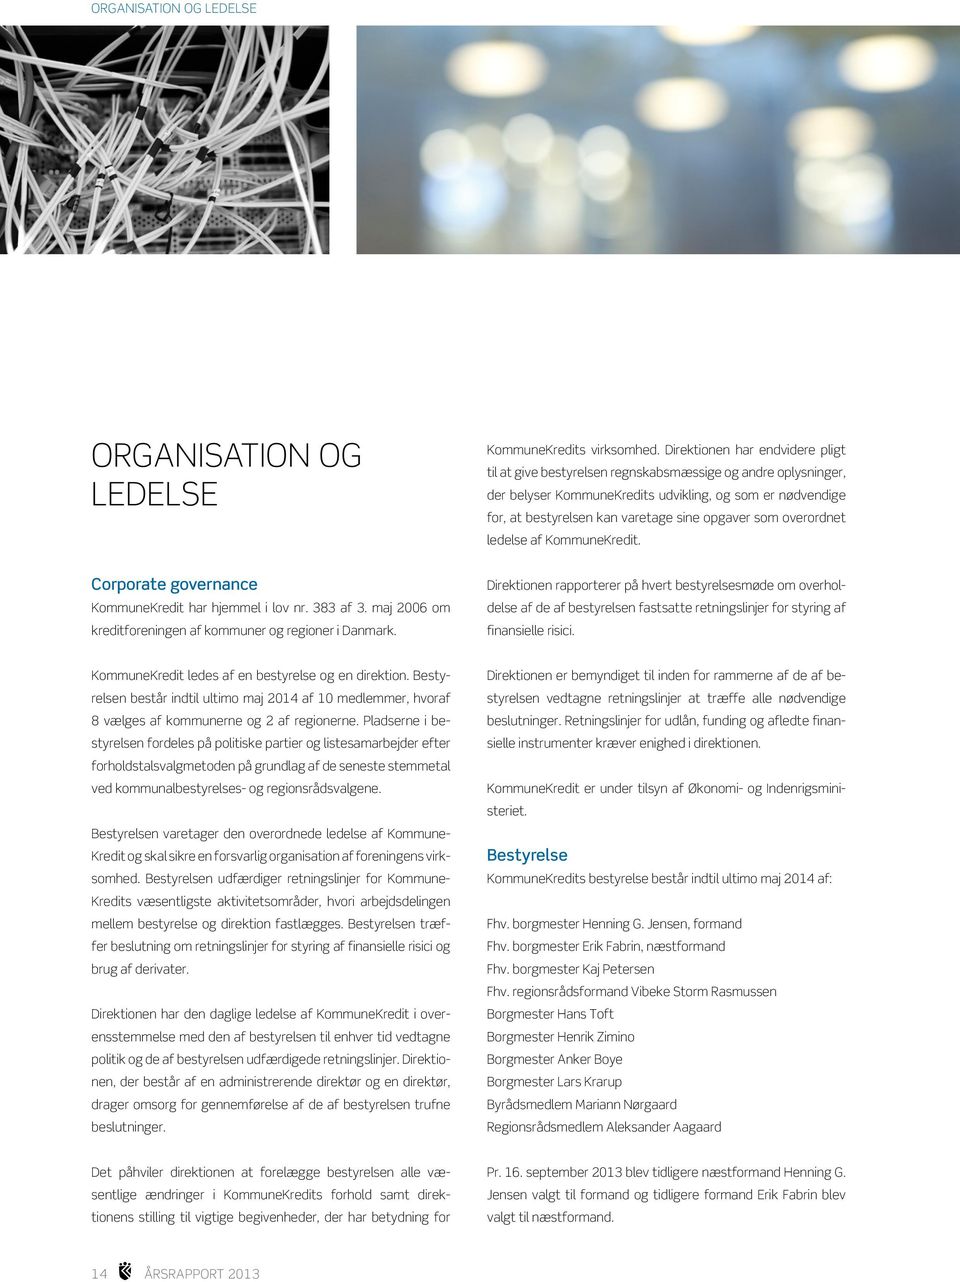 opgaver som overordnet ledelse af Kommune Kredit. Corporate governance KommuneKredit har hjemmel i lov nr. 383 af 3. maj 2006 om kreditforeningen af kommuner og regioner i Danmark.